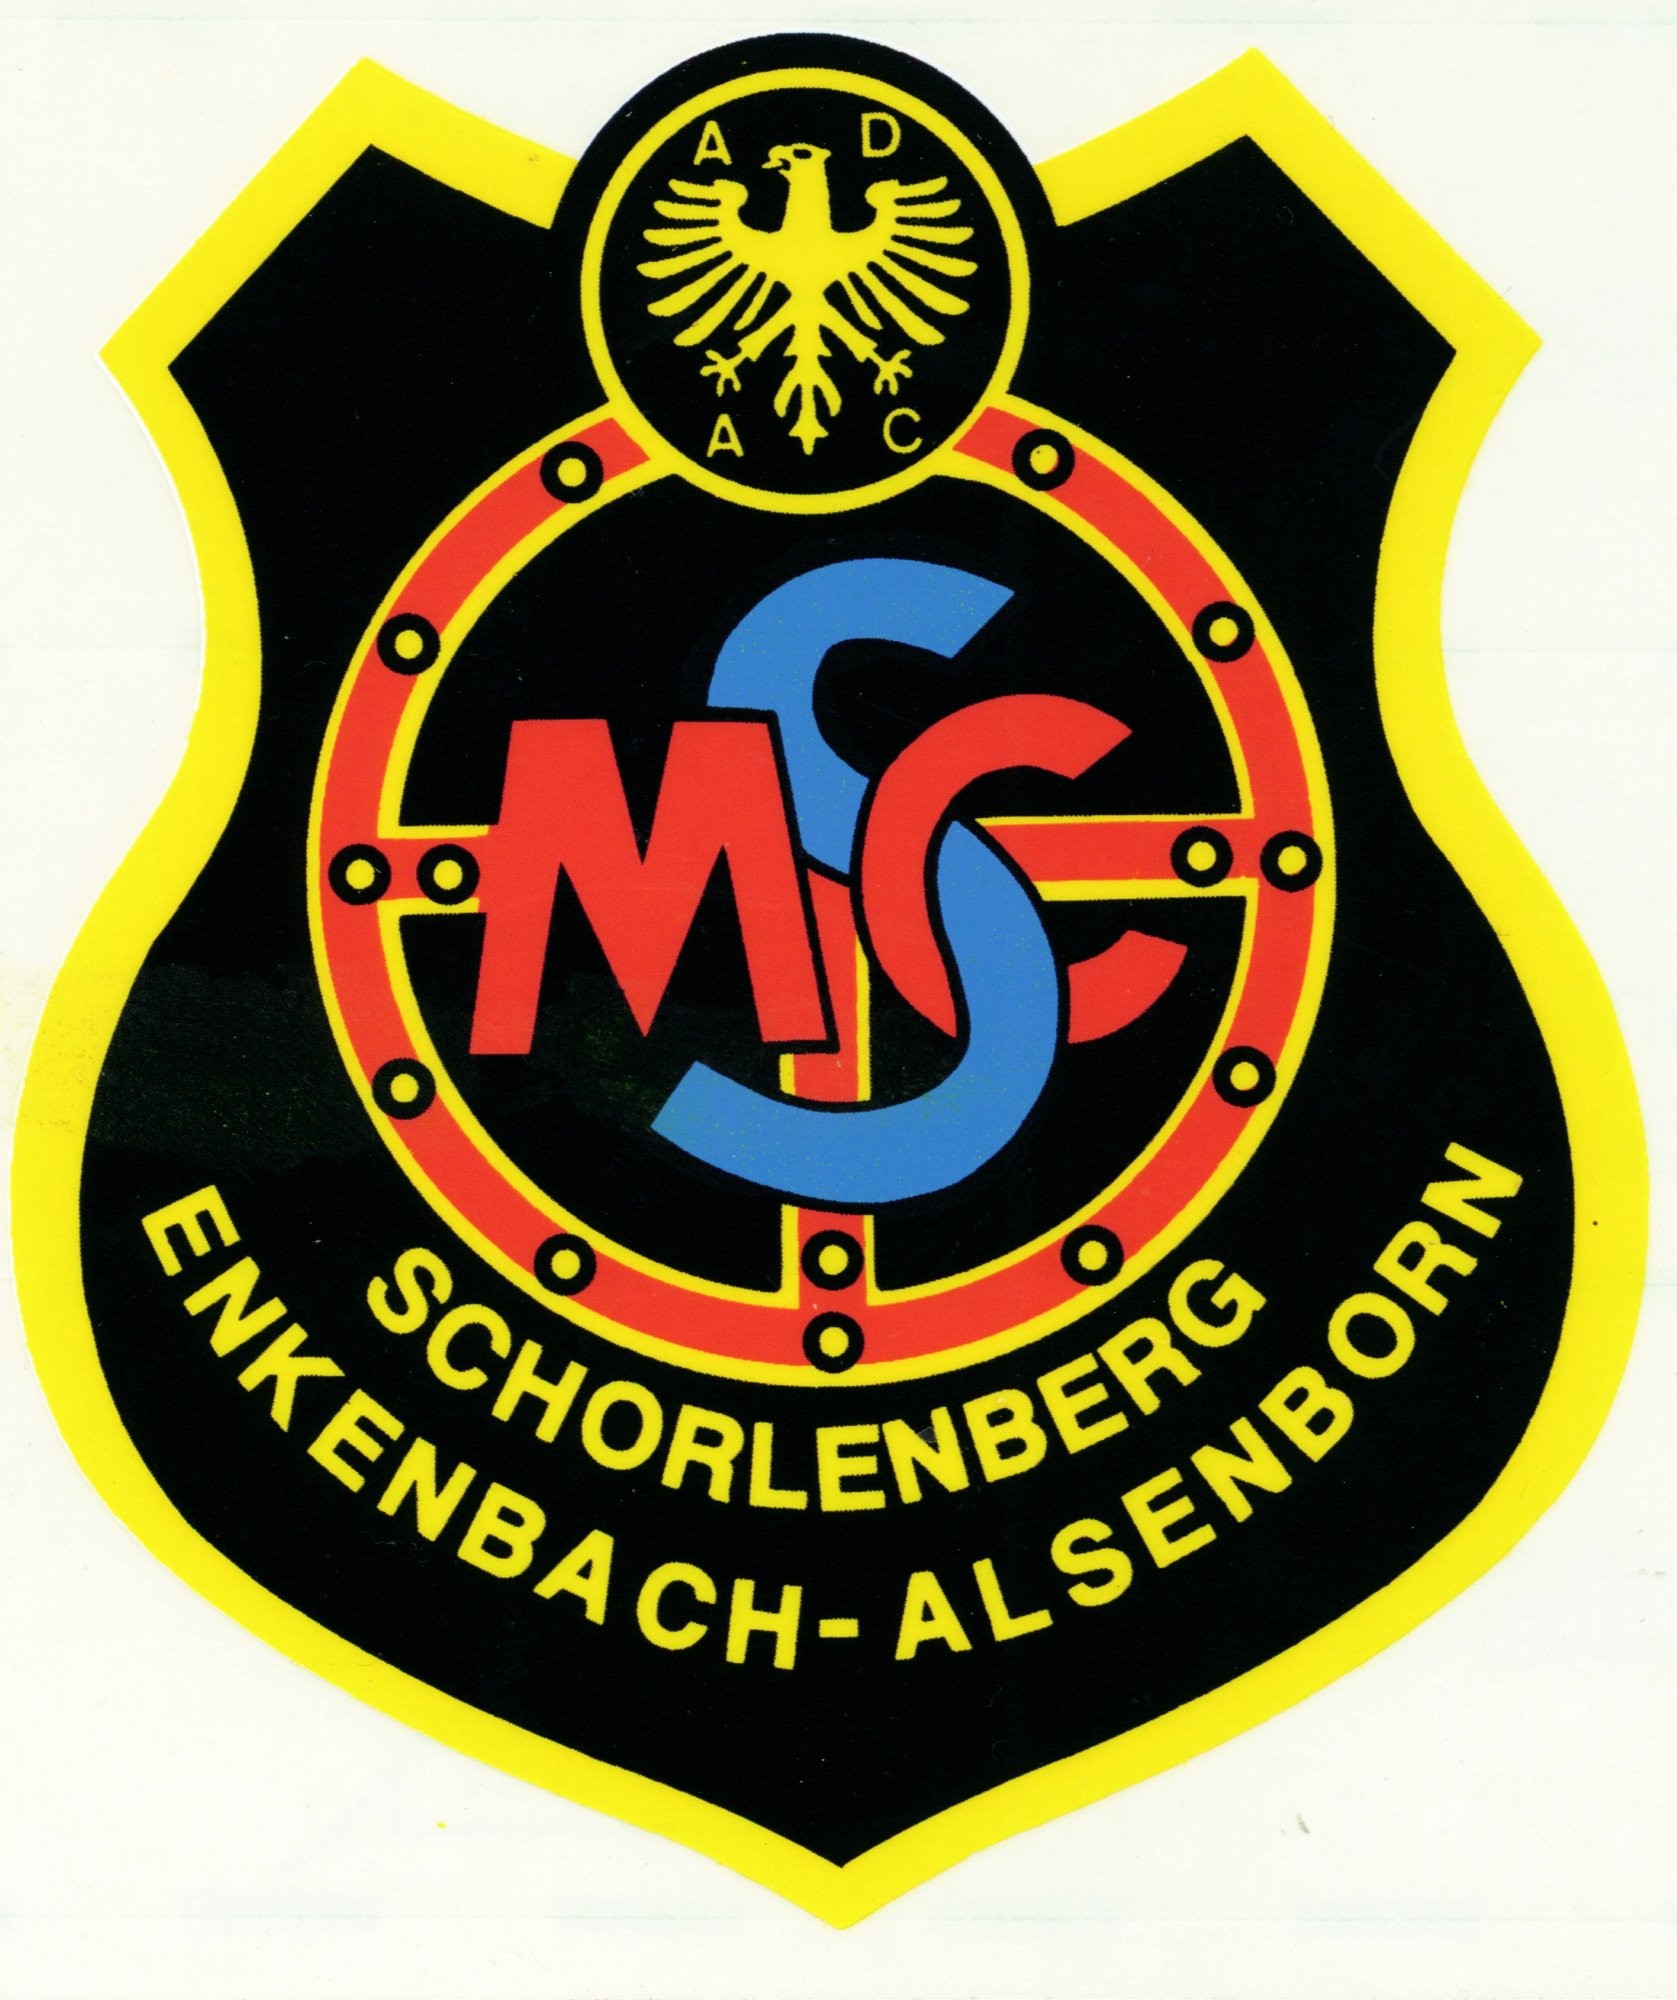 (c) Msc-schorlenberg.de